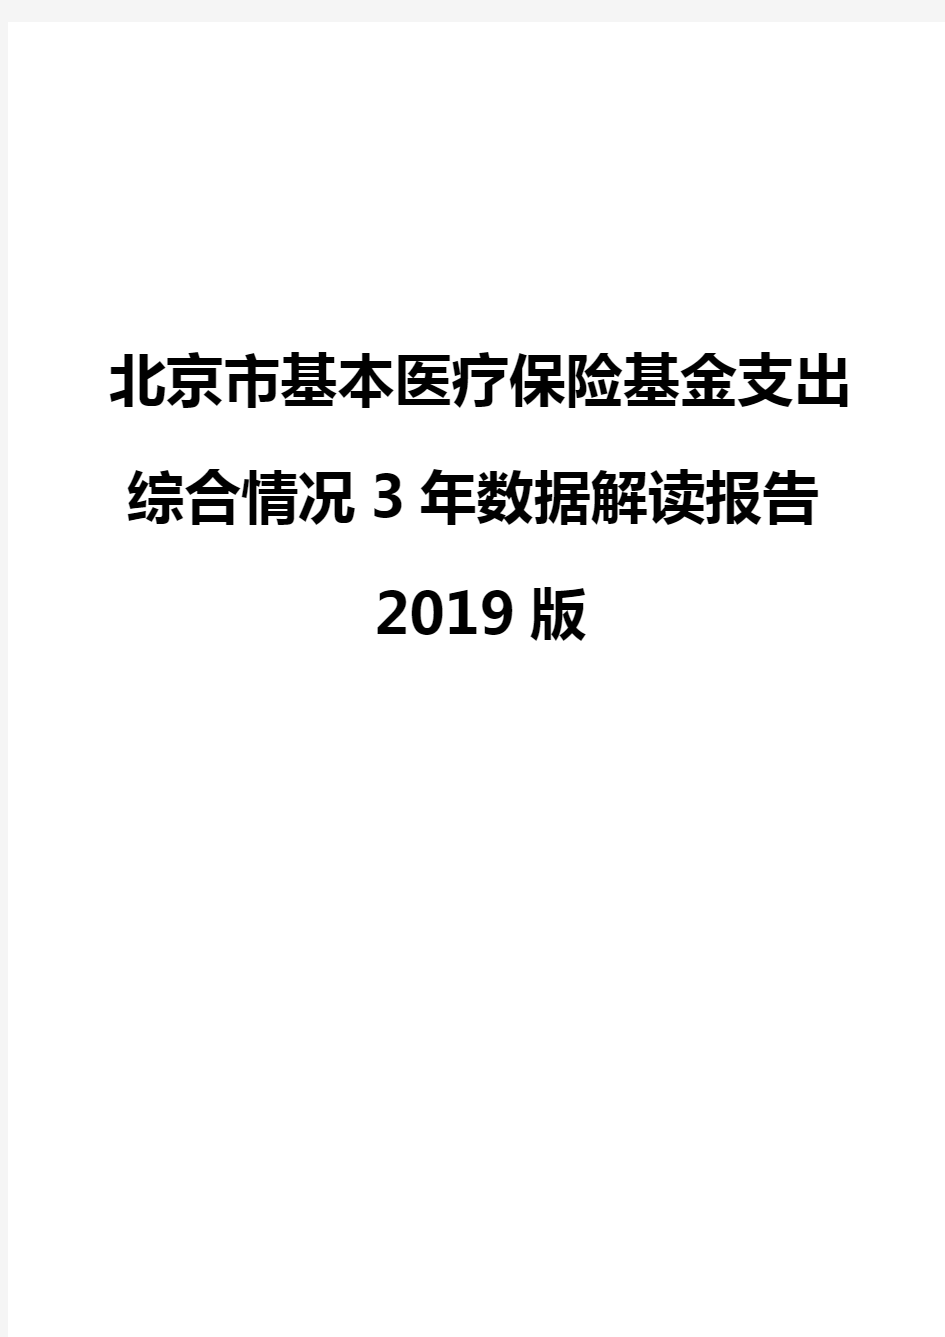 北京市基本医疗保险基金支出综合情况3年数据解读报告2019版